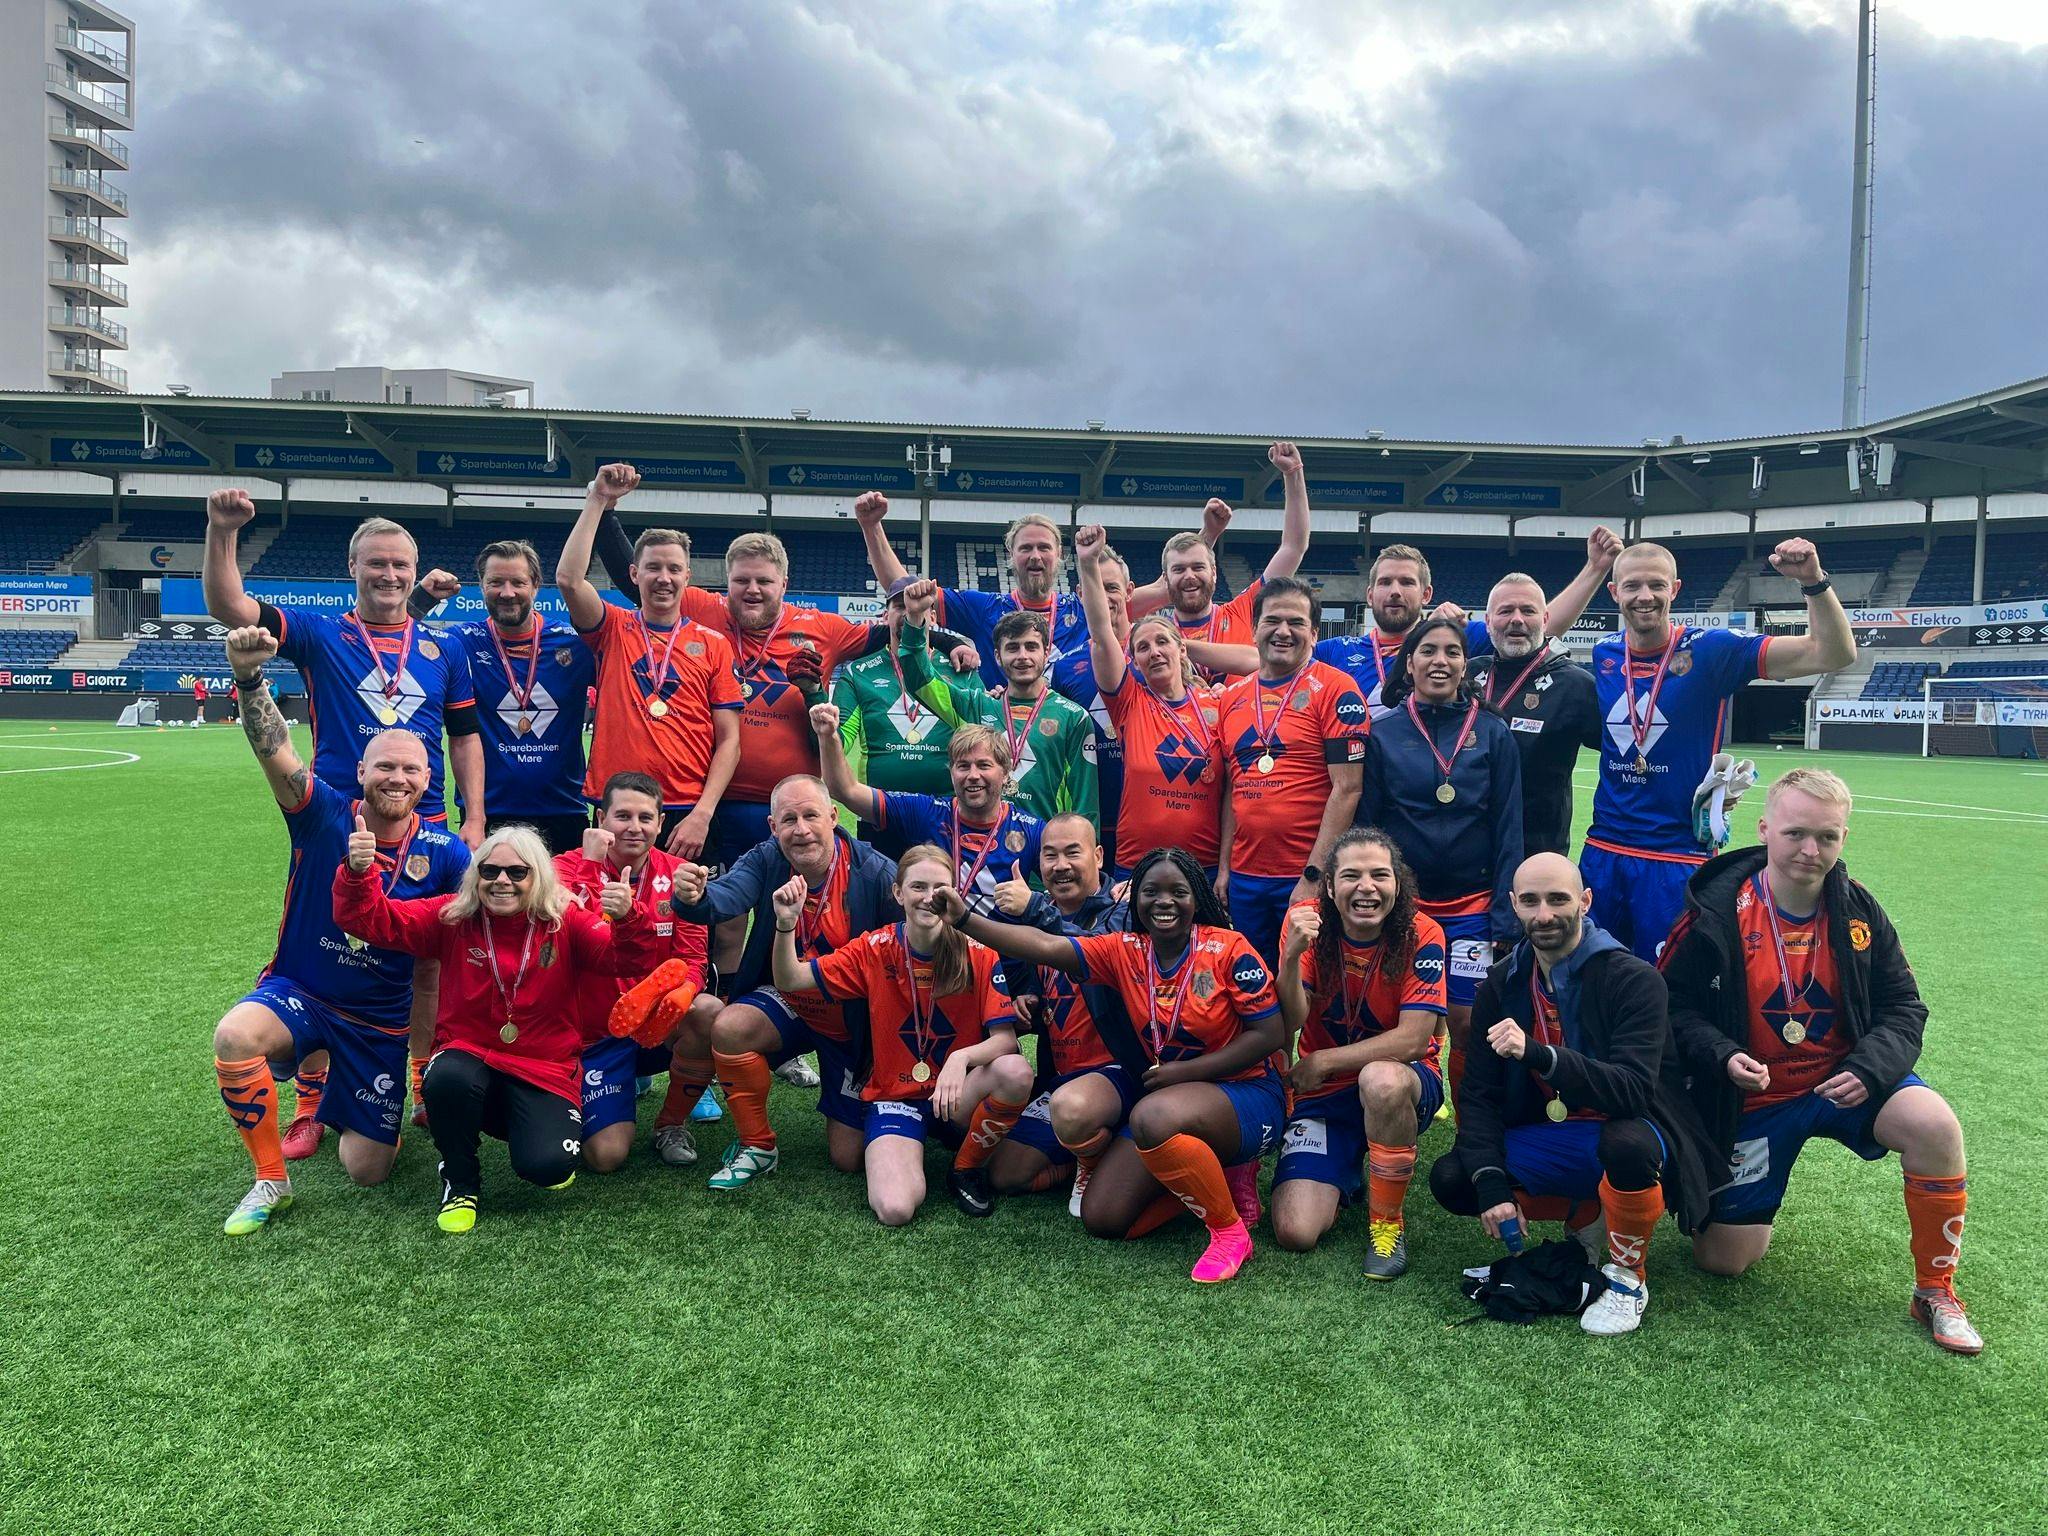 Bilde av Aalesunds fotballklubb sin markering. Bildet viser en gruppe mennesker i fotballdrakter, noen i røde, andre i blå, men alle er samlet og smiler mot kamera og løfter neven. 